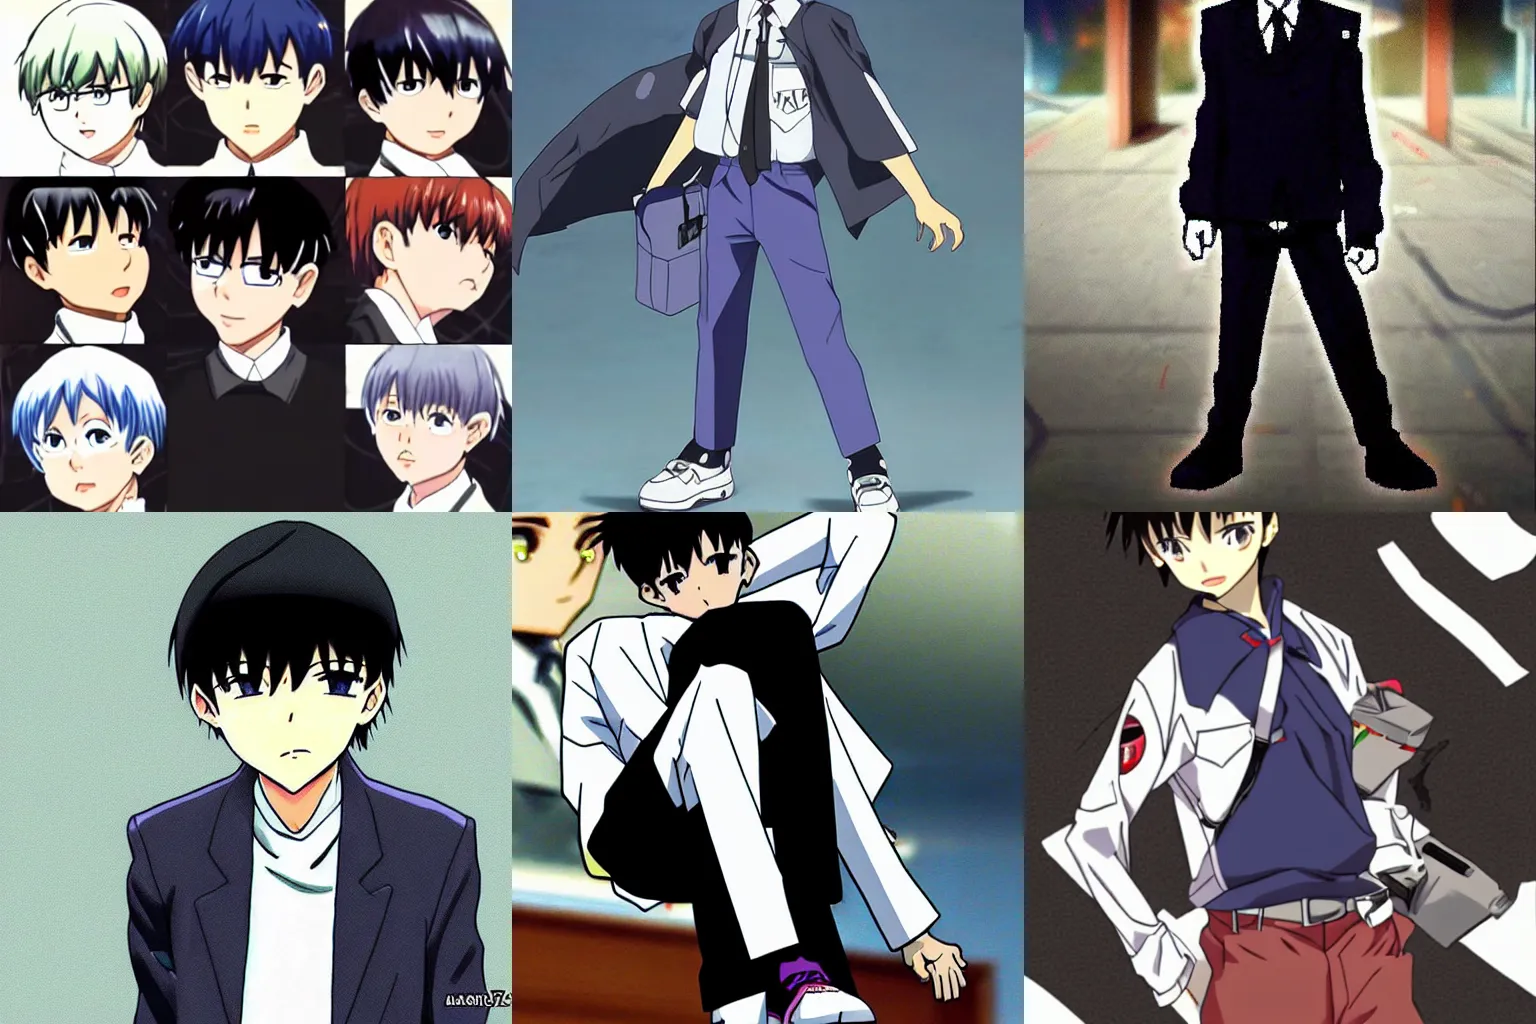 Prompt: Shinji Ikari has swag